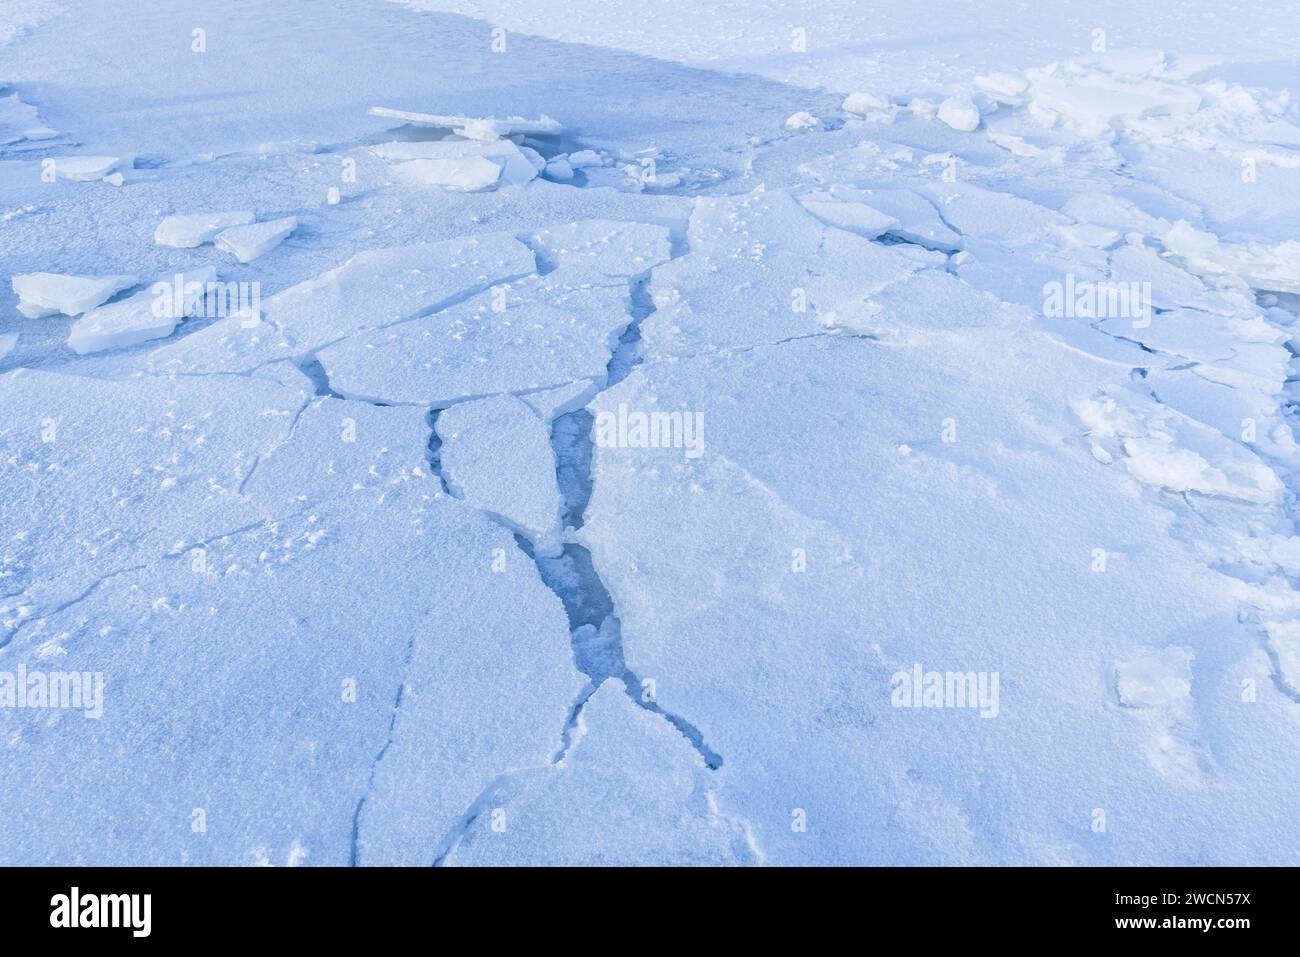 Bosses de glace couvertes de neige. Des fragments de glace brisés reposent sur la côte de la mer Baltique gelée un jour d'hiver Banque D'Images